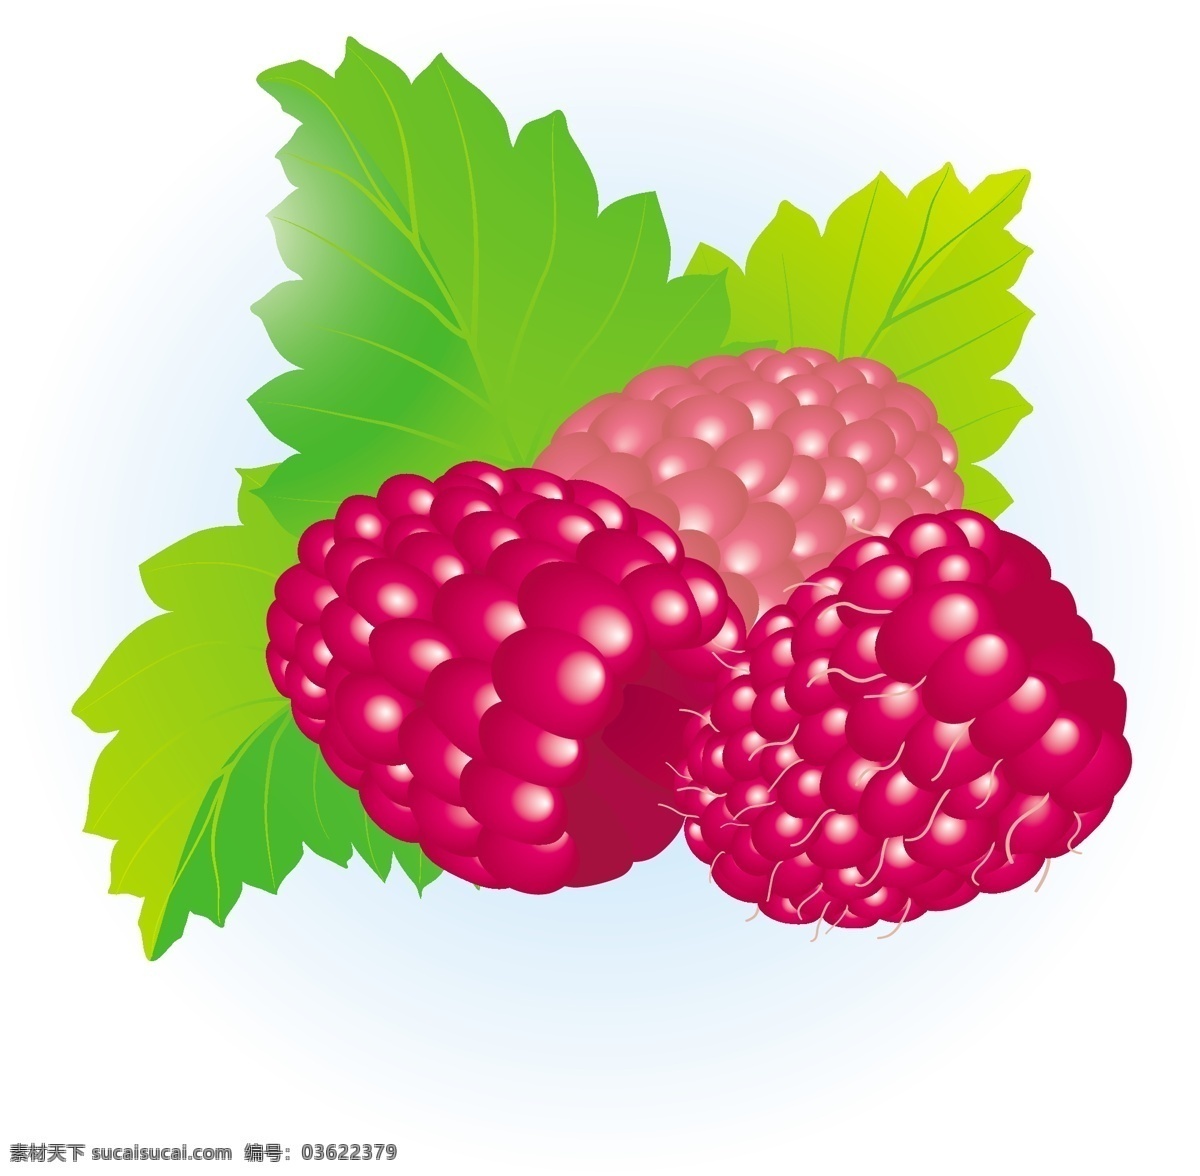 免费 覆盆子 矢量 插画 插图 艺术 山莓 莓插图 无 莓 图形插画矢量 矢量图 其他矢量图